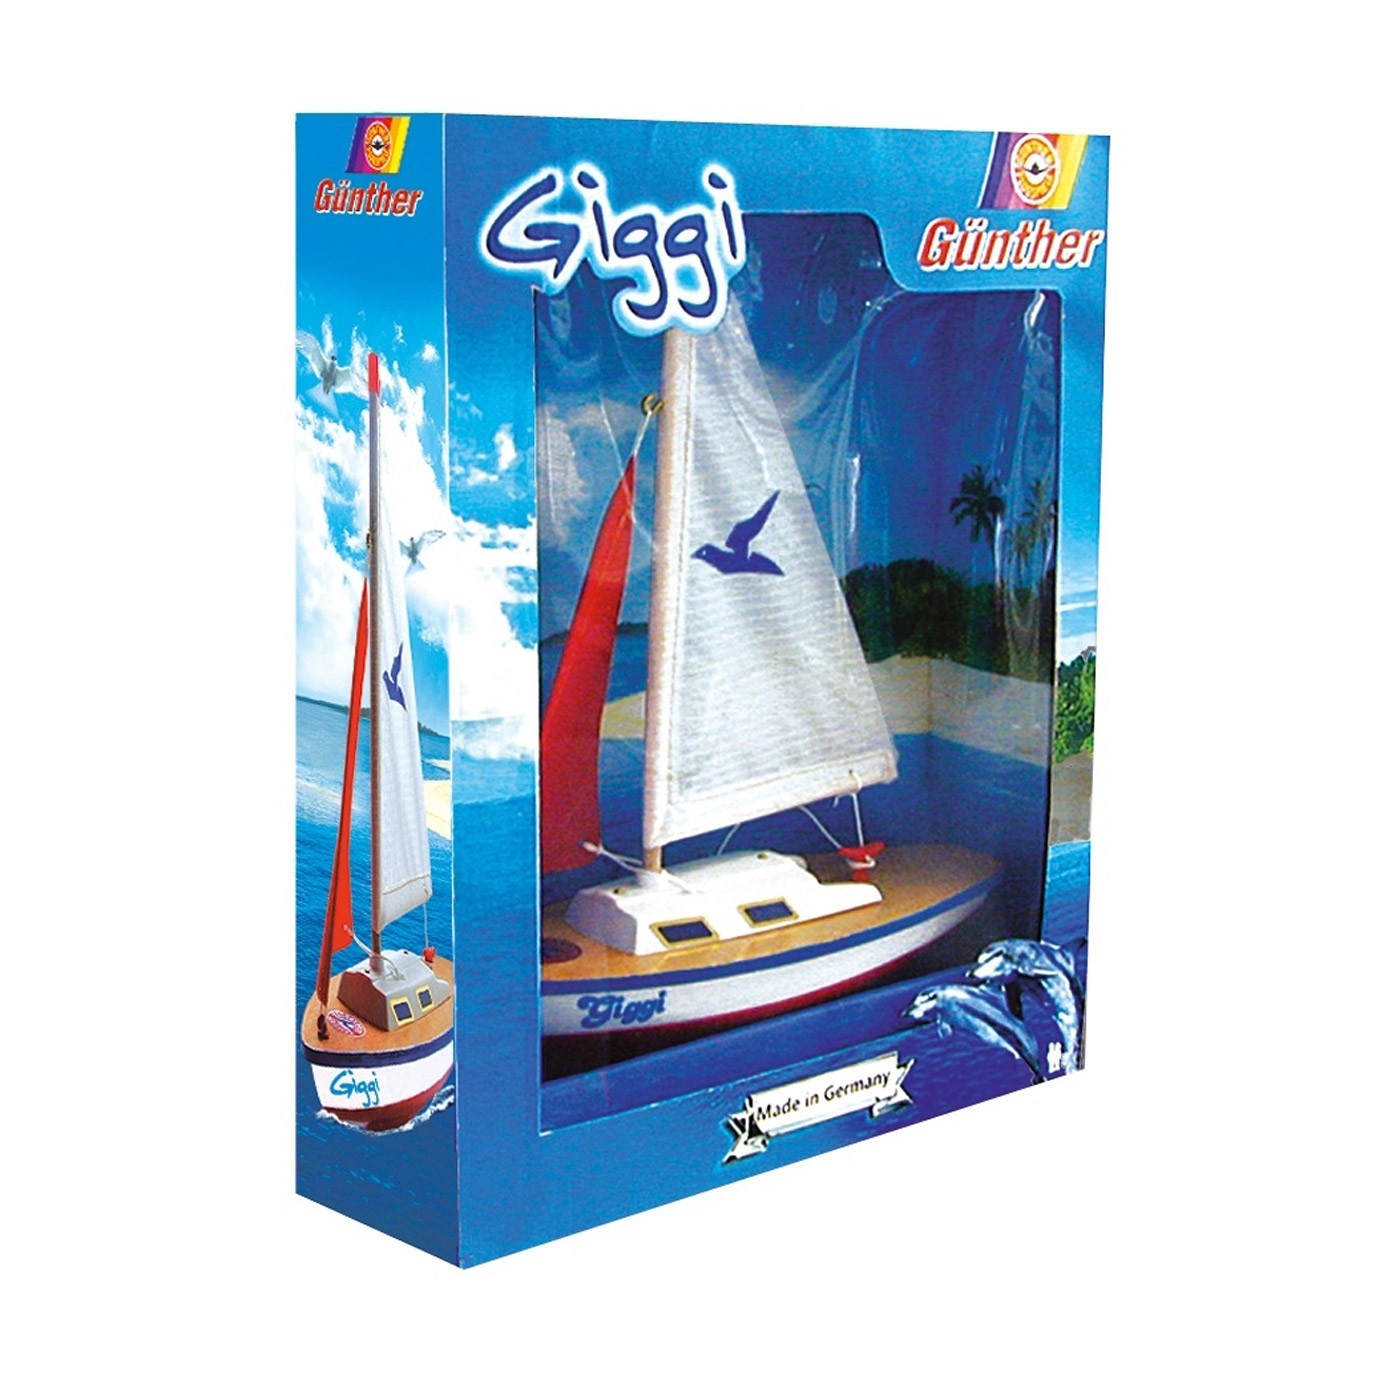 Model plachetnice pro děti GIGGI 24x32 cm (dřevo)